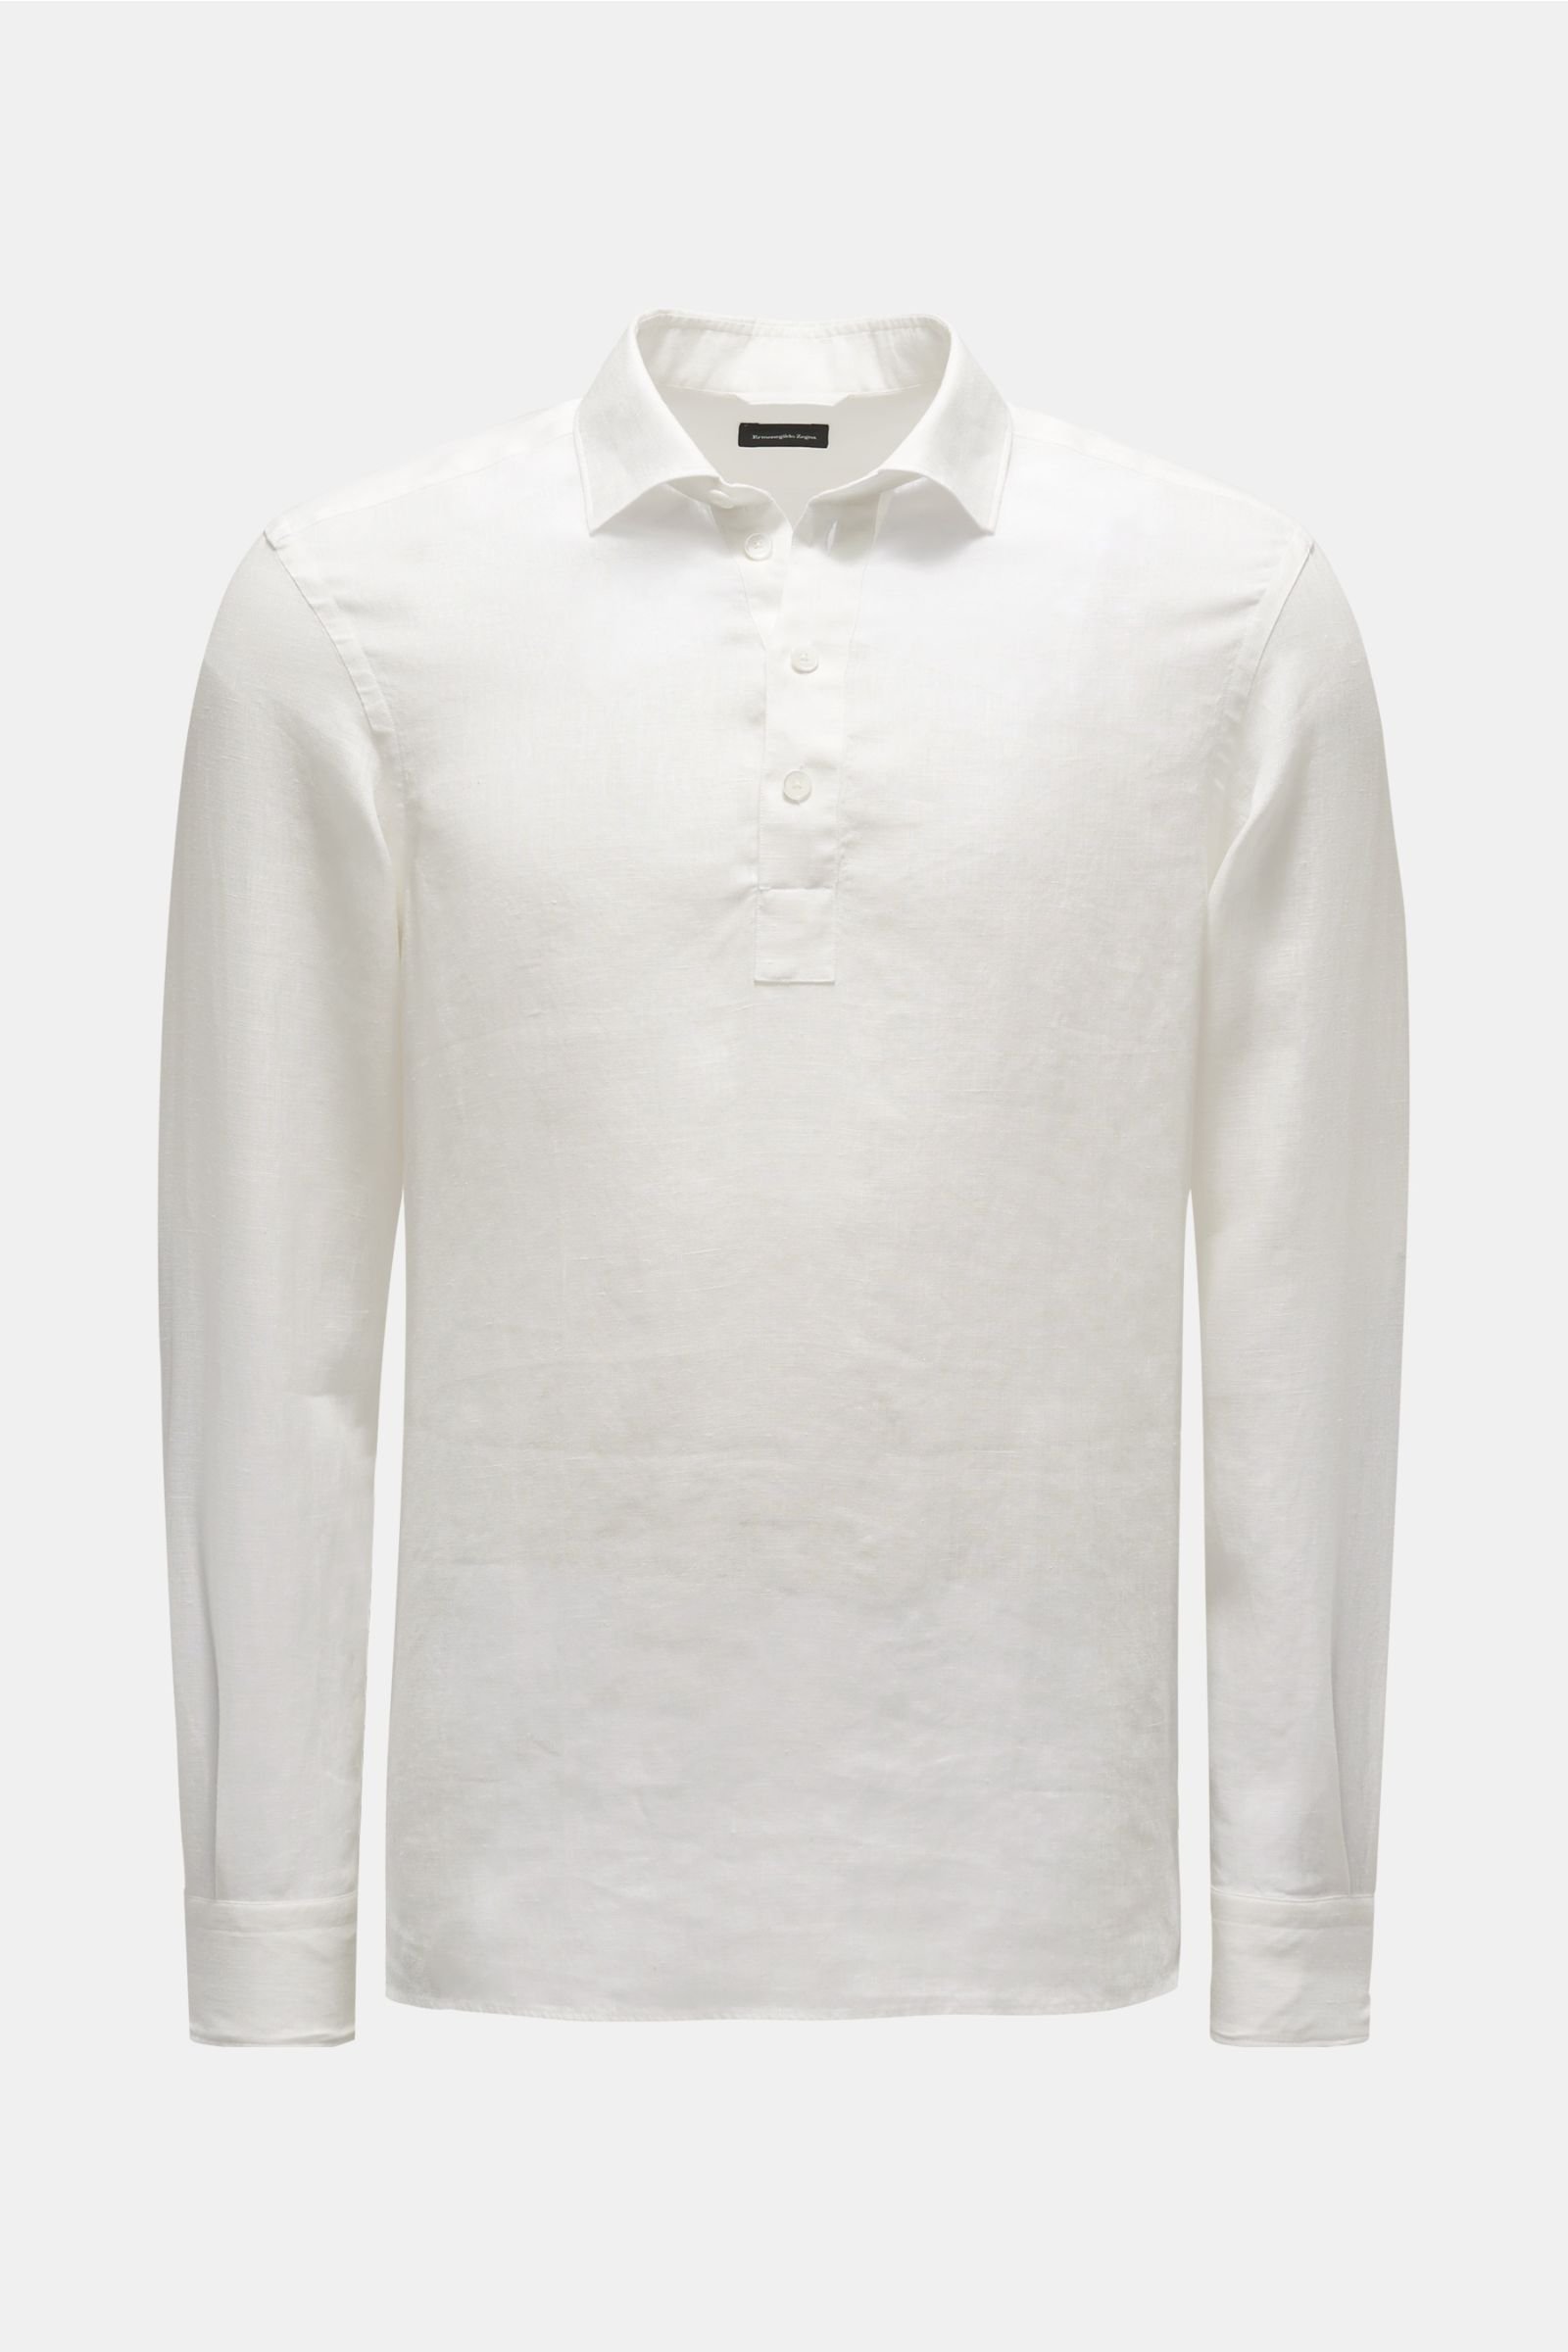 Leinen-Popover-Hemd schmaler Kragen weiß